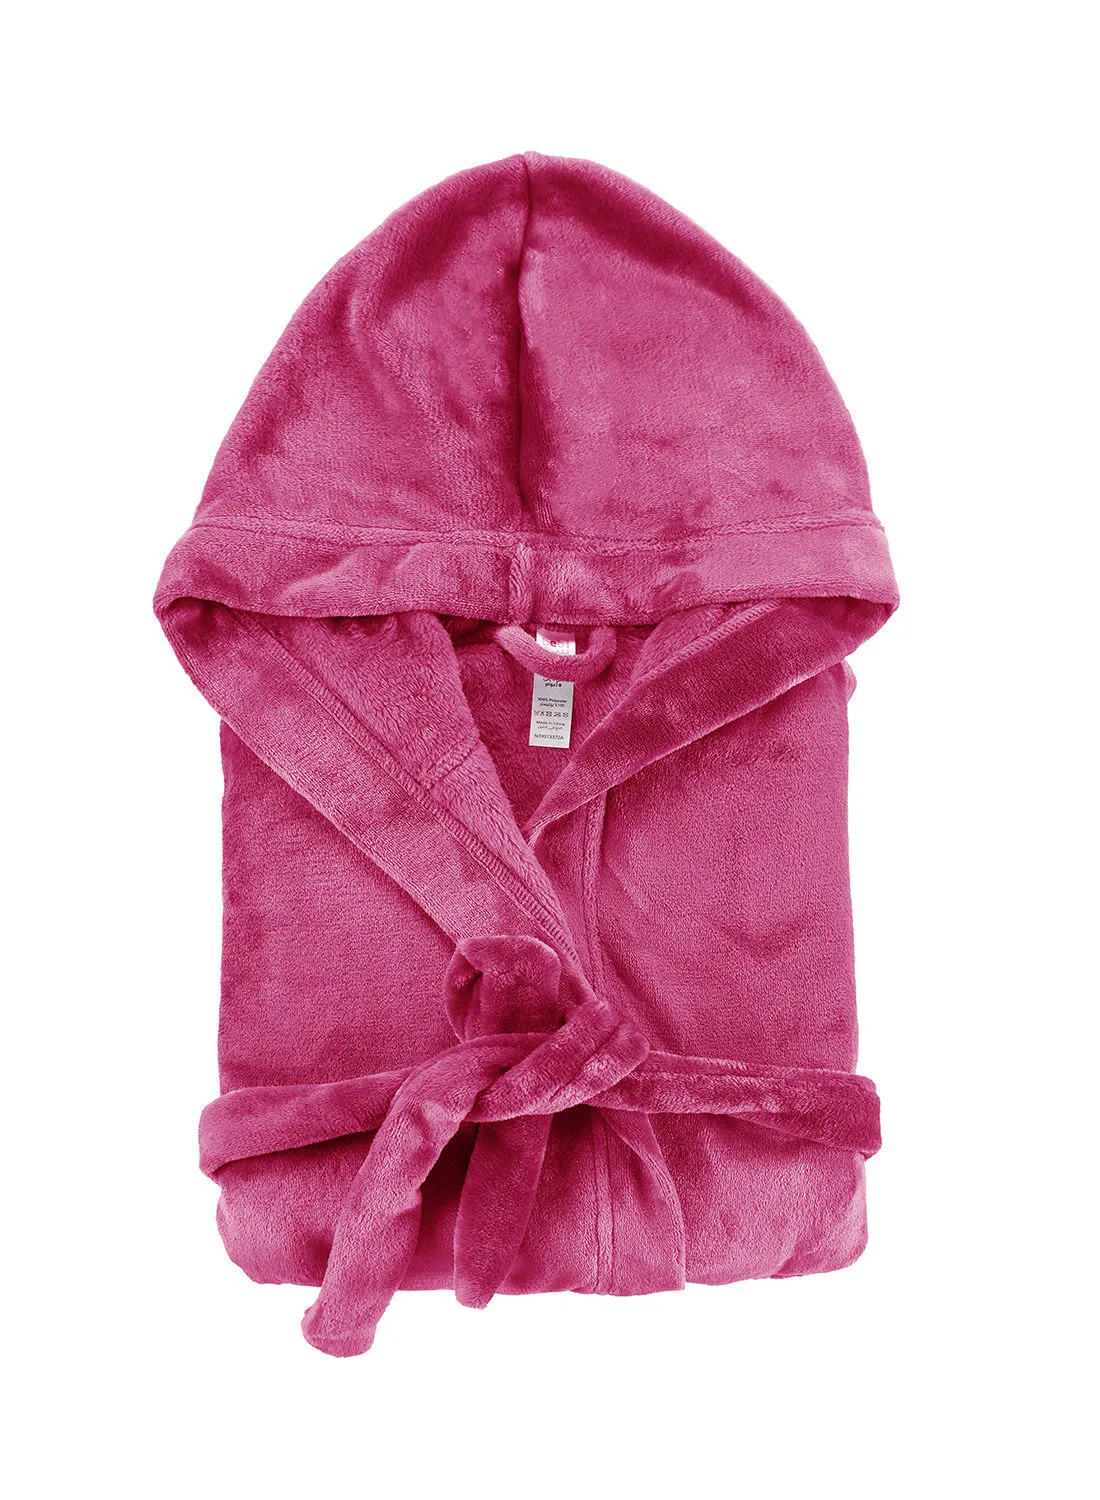 Bebi Bebi Kids Bathroom Towel Set - 240 GSM 100% Cotton - Rose Pink Color - Lightweight - Kids Hooded Comfortable - For Girls & Boys - 1 Piece